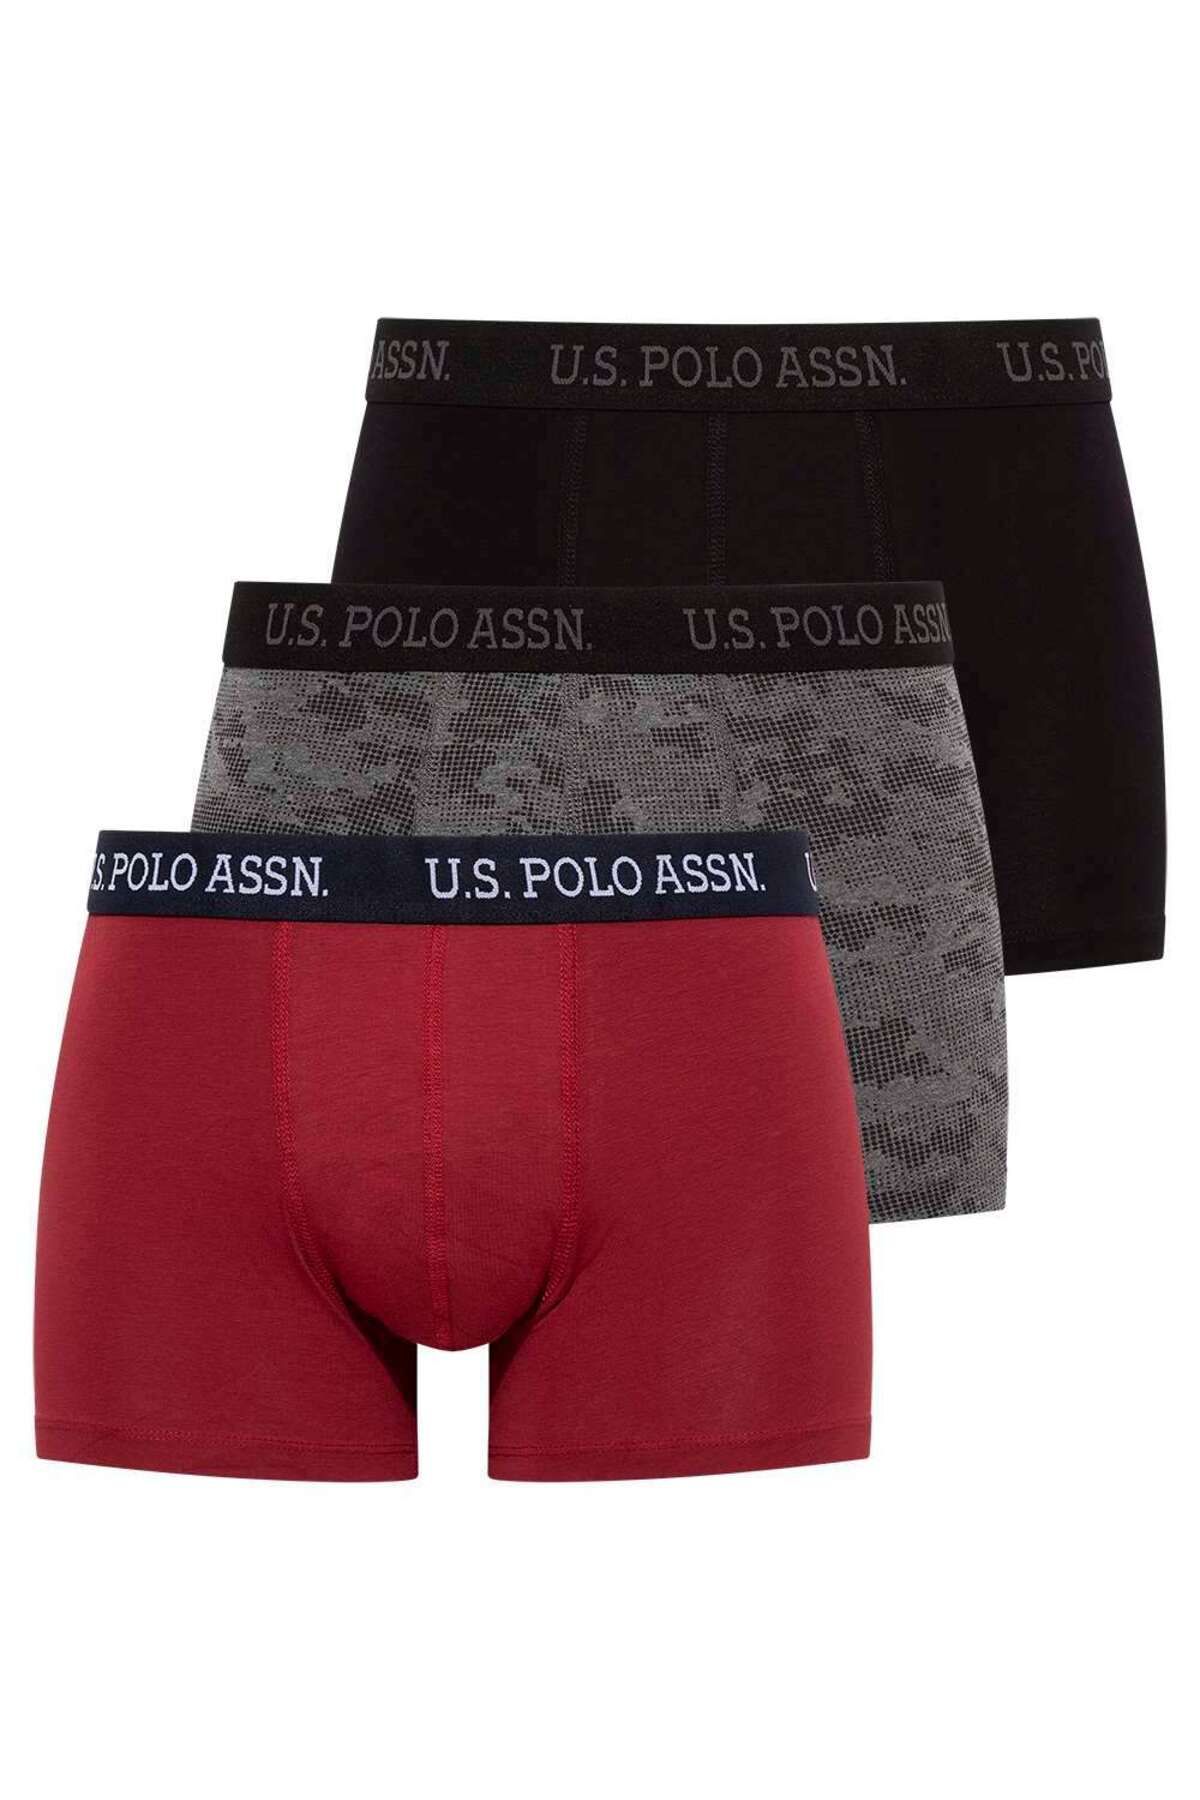 U.S. Polo Assn. Erkek Siyah - Antrasit - Bordo 3 Lü Boxer 80452ınt